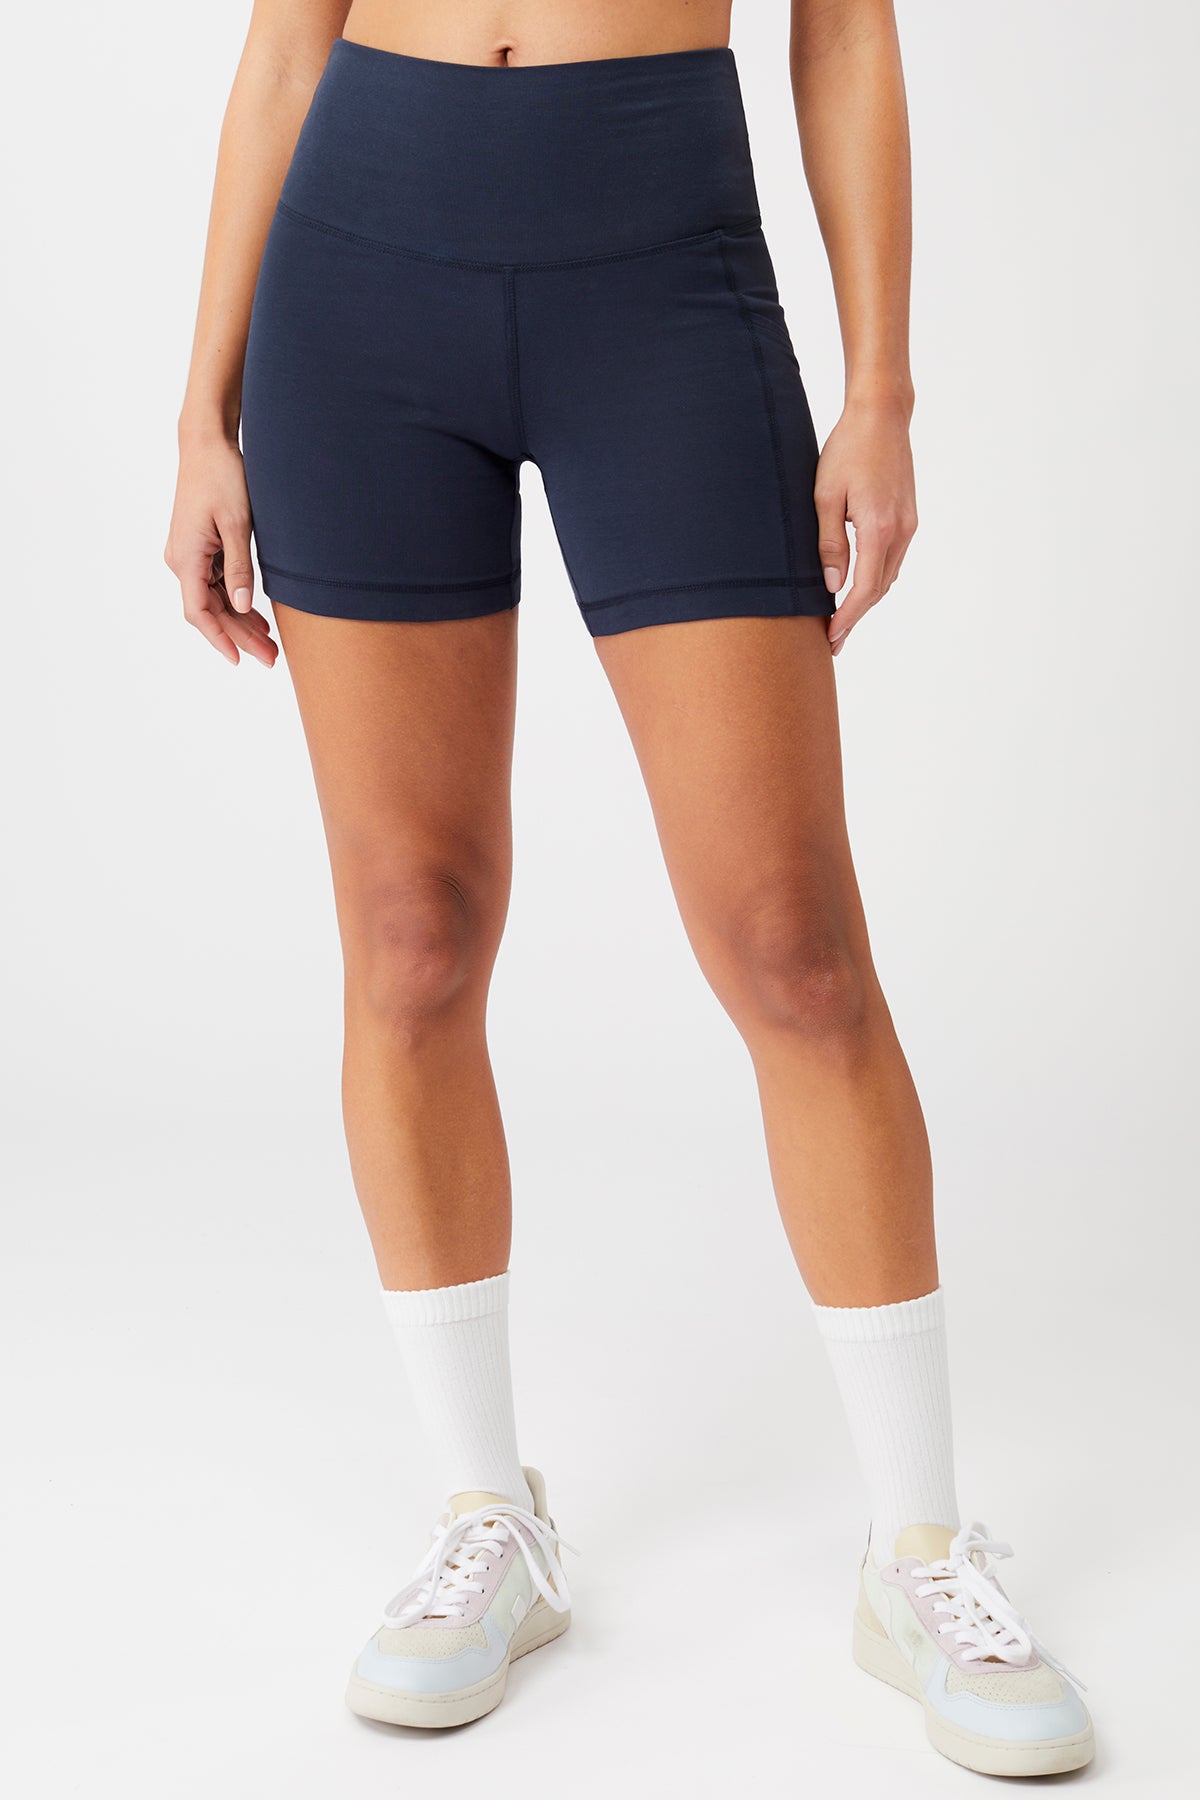 Mandala Yoga Shorts Blau Front - Sprinter Shorts